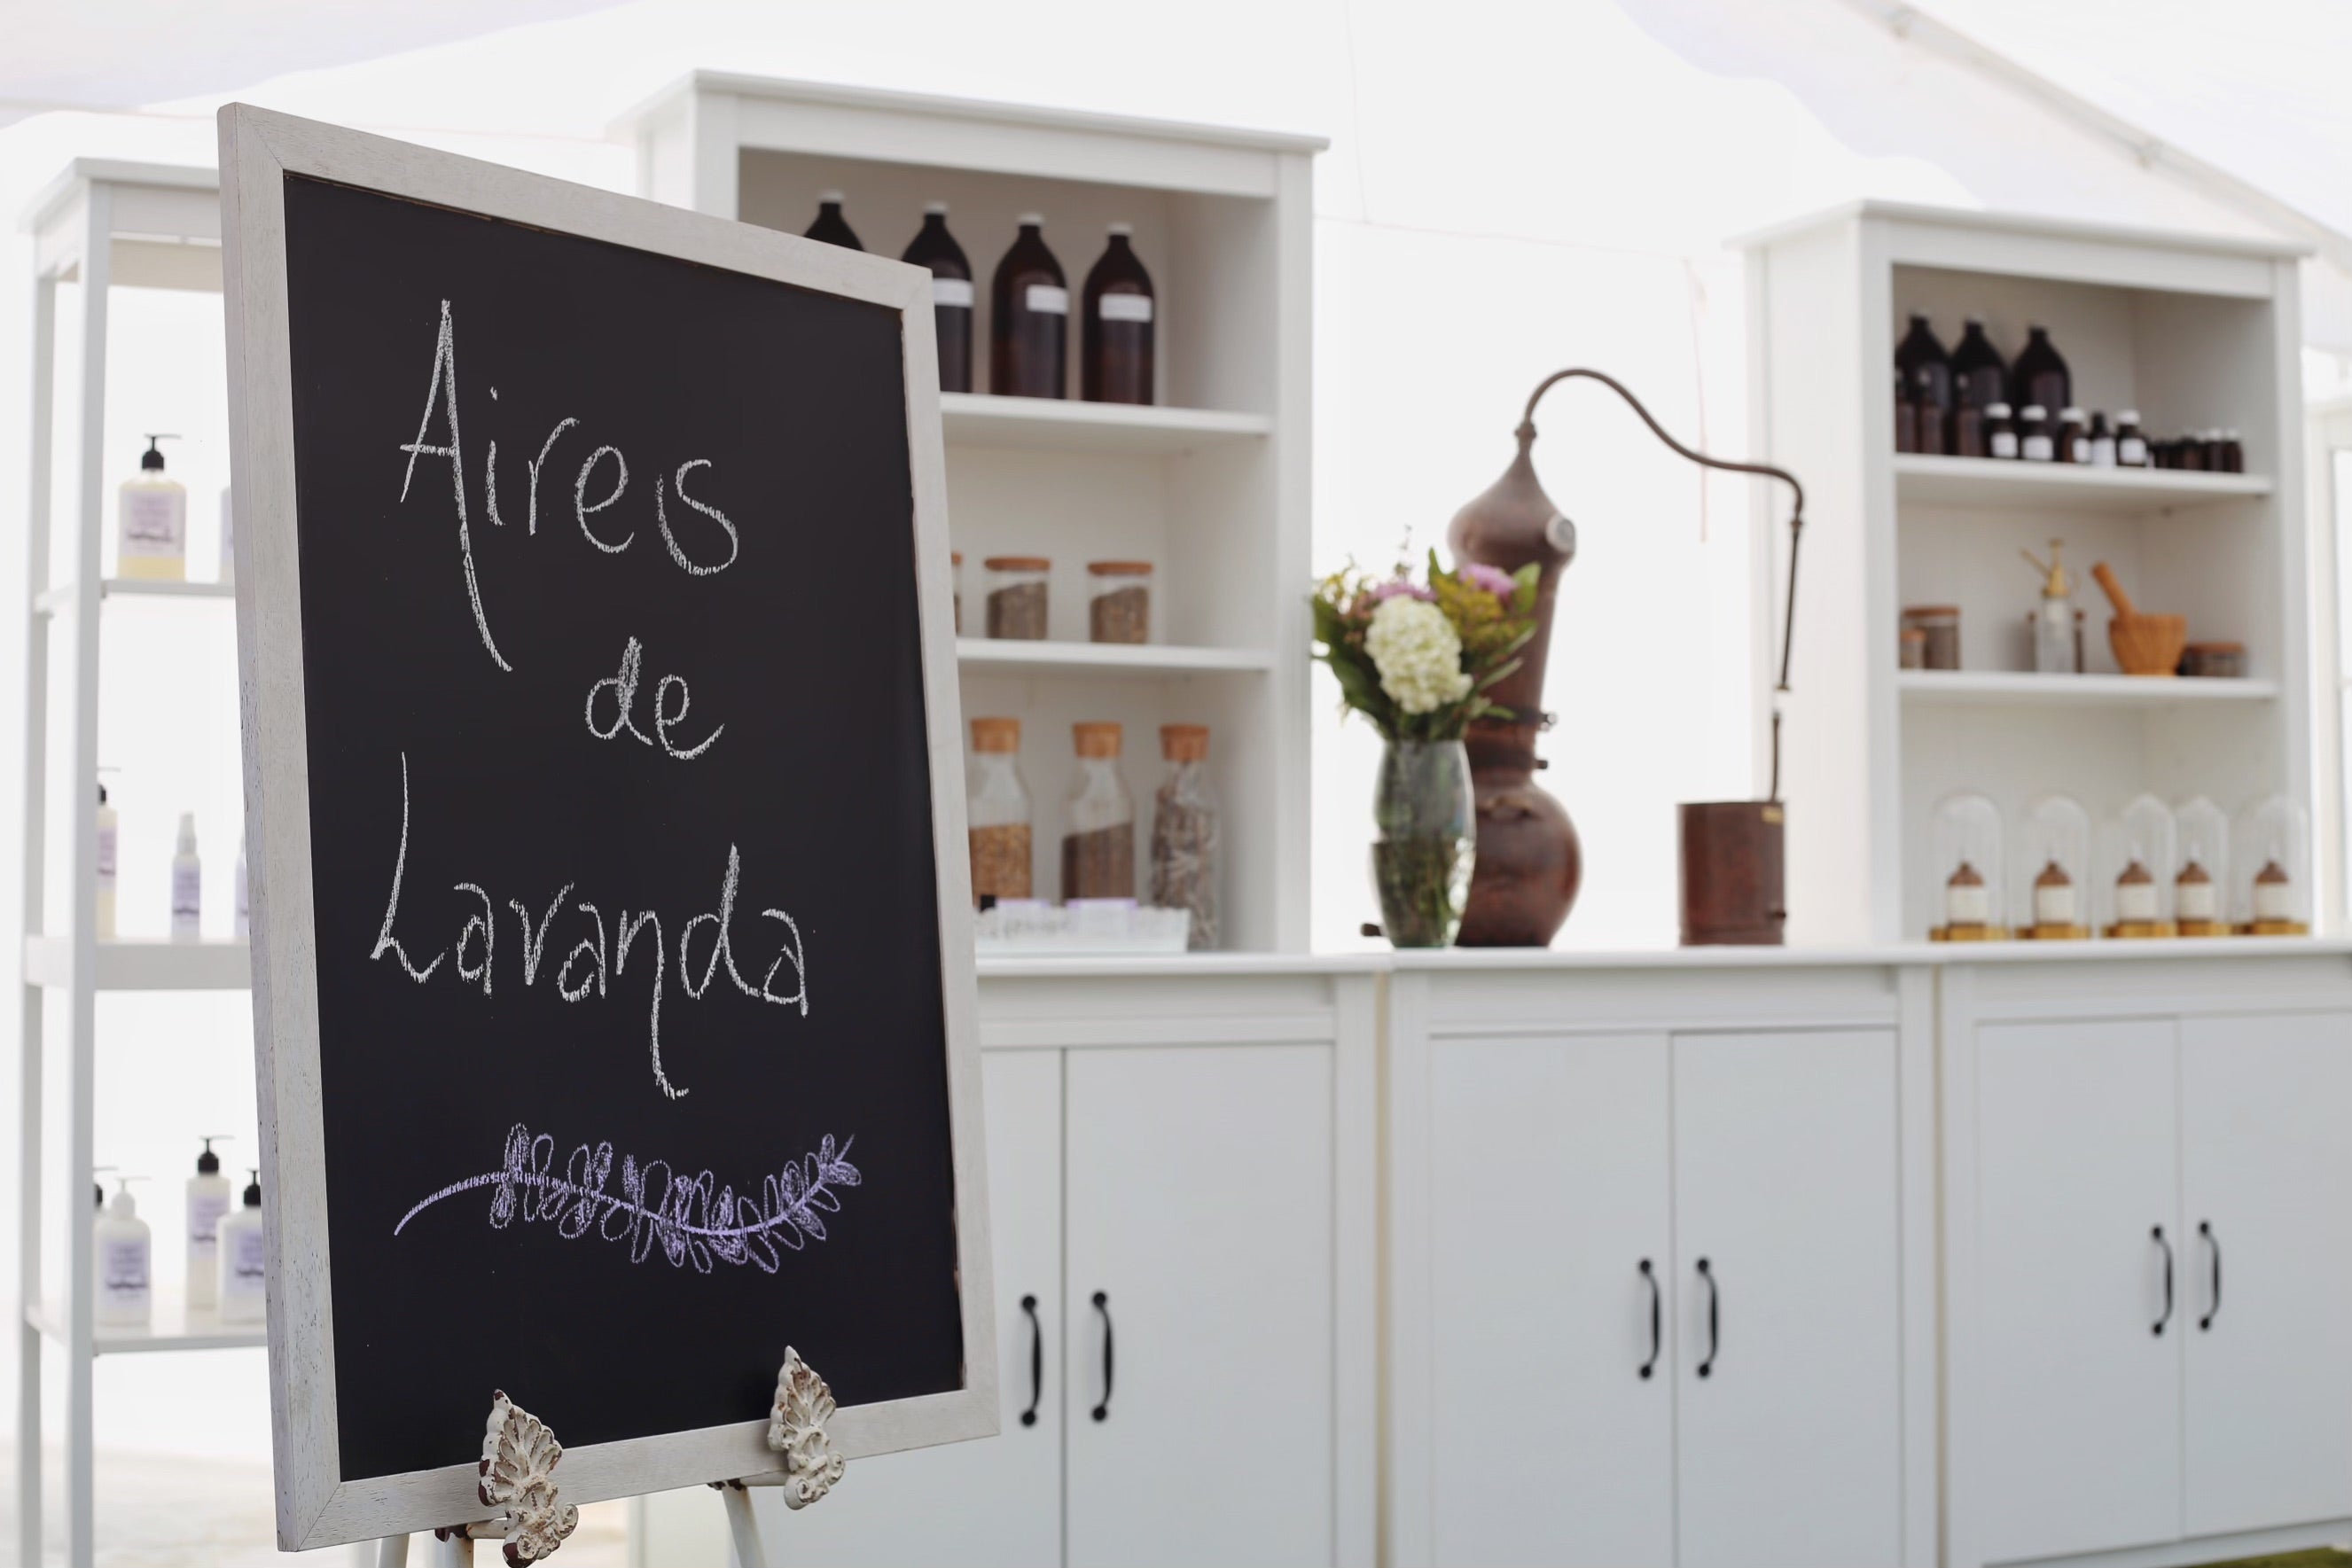 Lavender Workshop - Aires de Lavanda